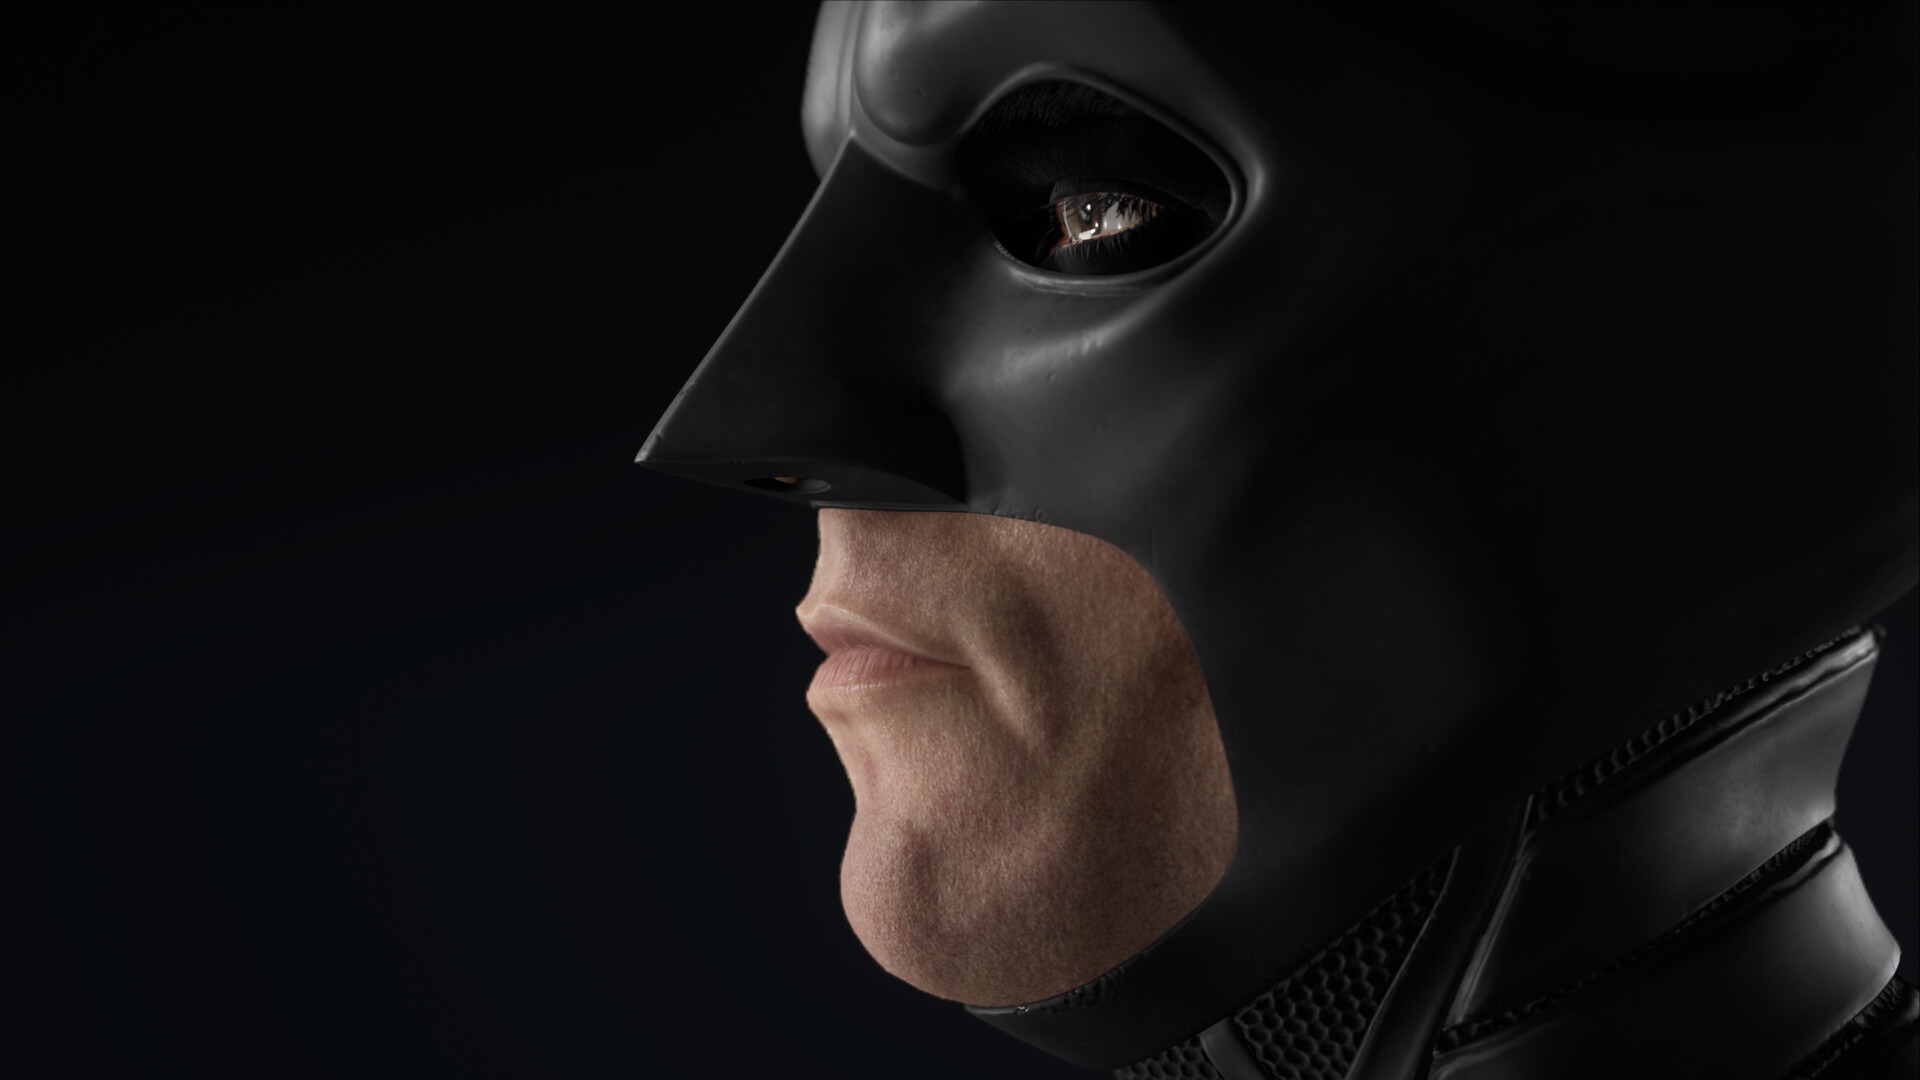 粉絲利用虛幻4自製《蝙蝠俠》全新3D角色模型